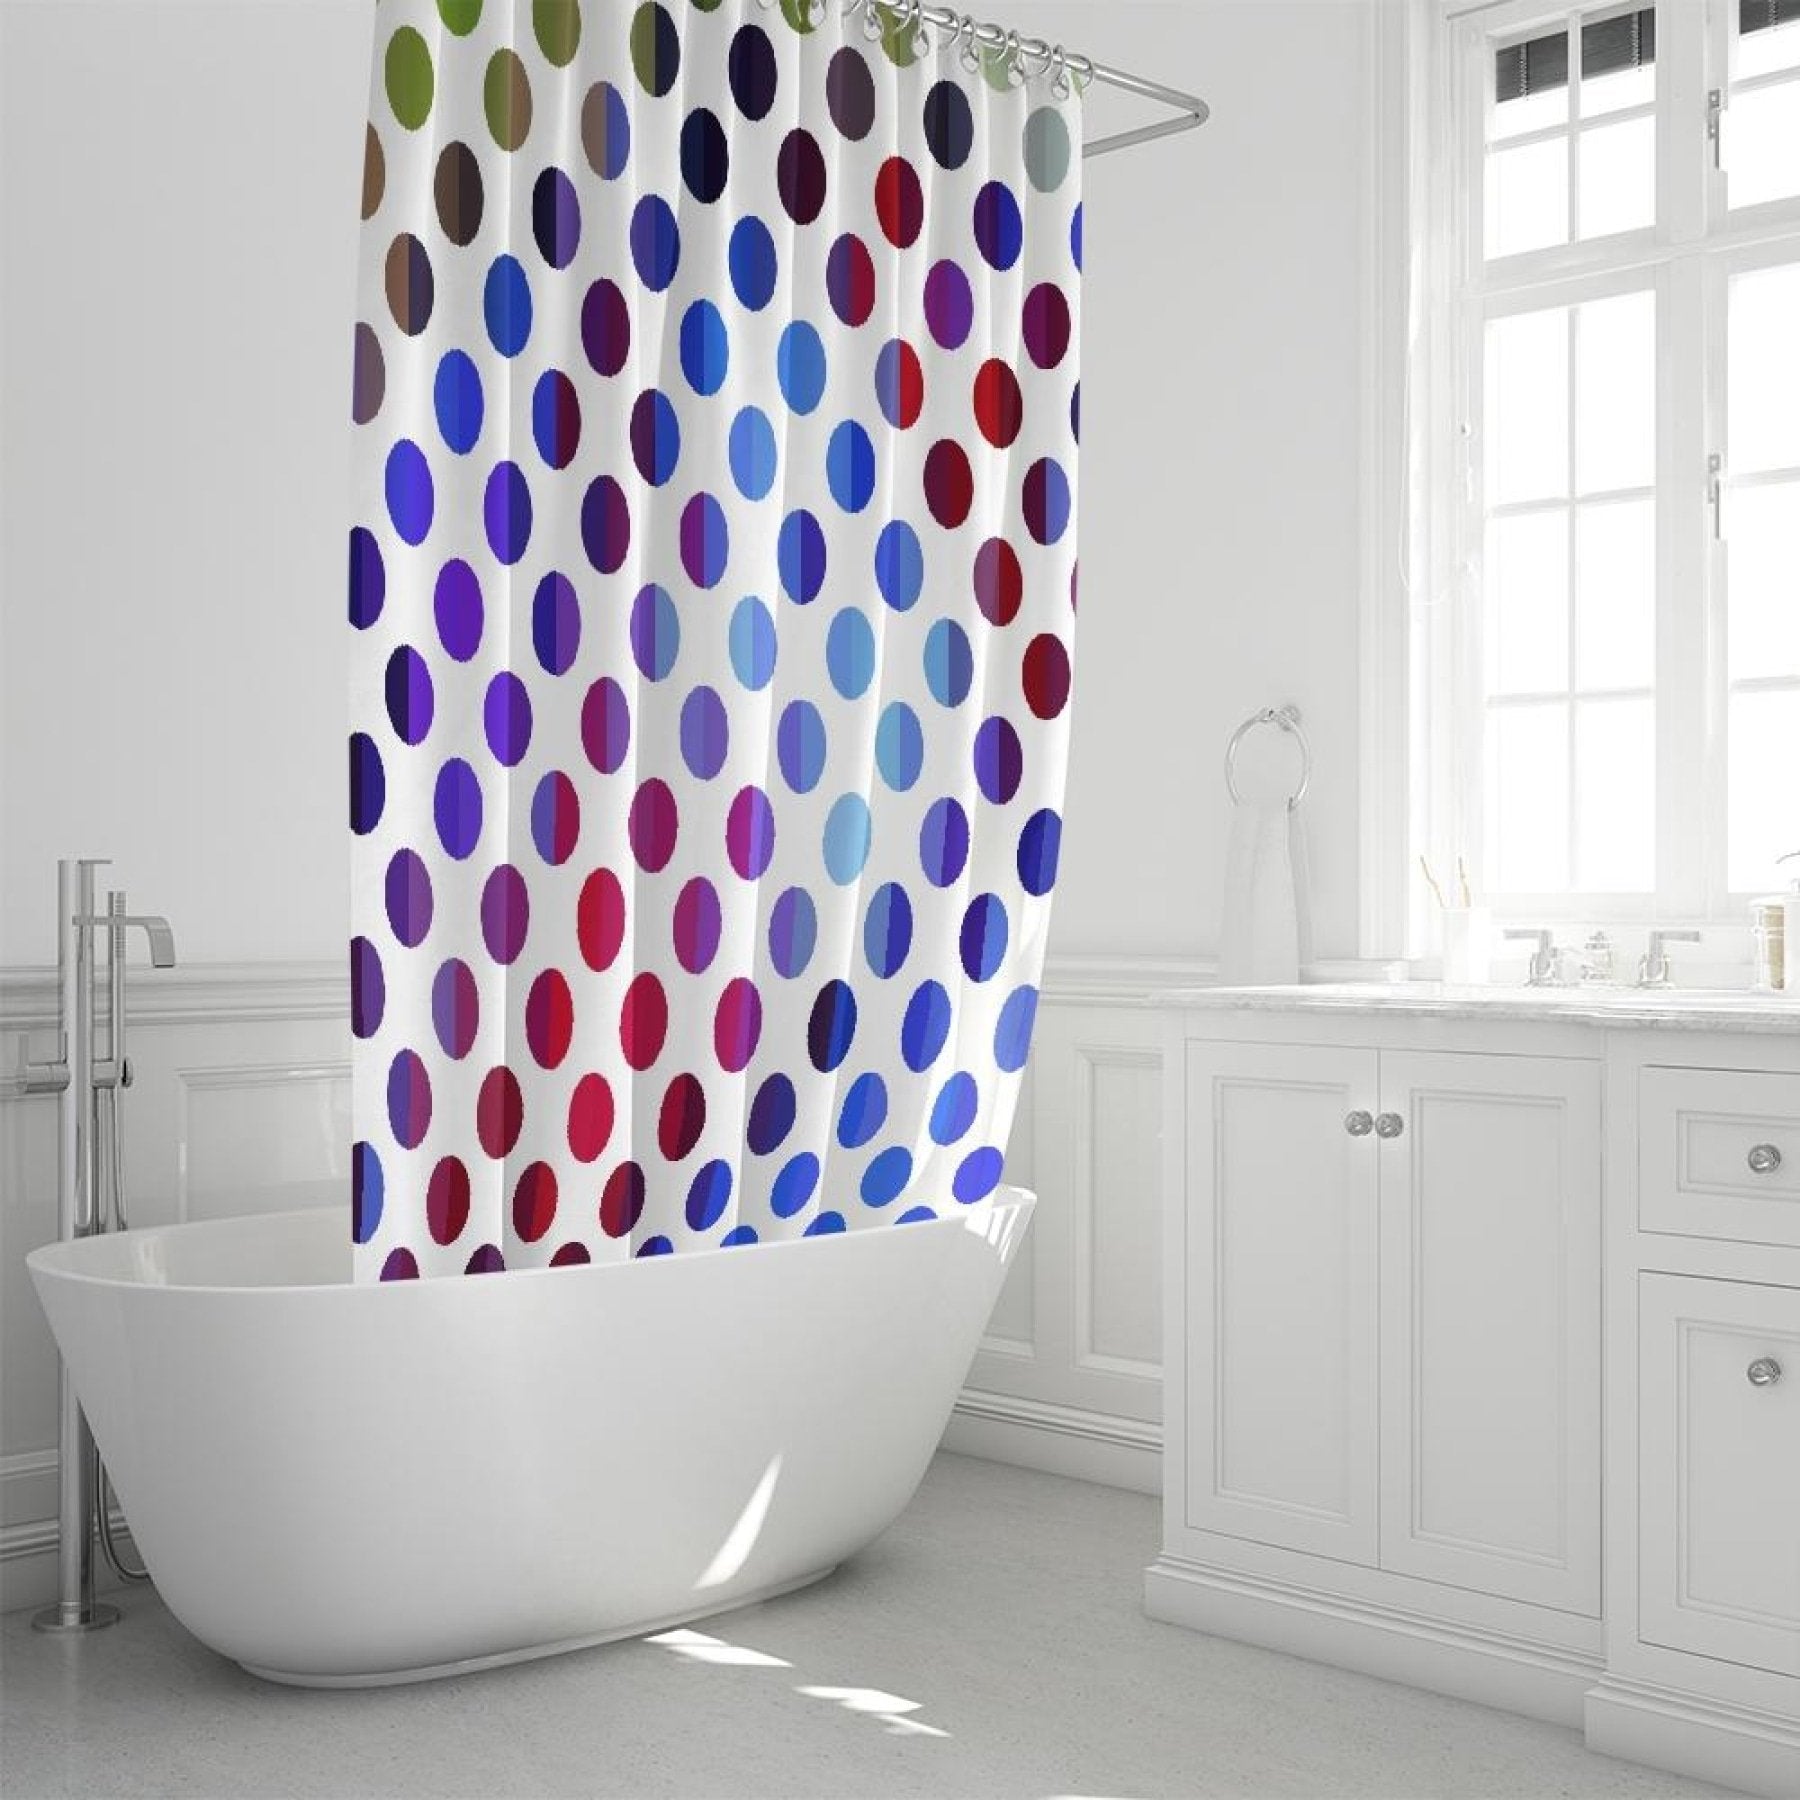 Decorative Shower Curtain - Polka Dot Fusion Style Curtain 72x72 inch